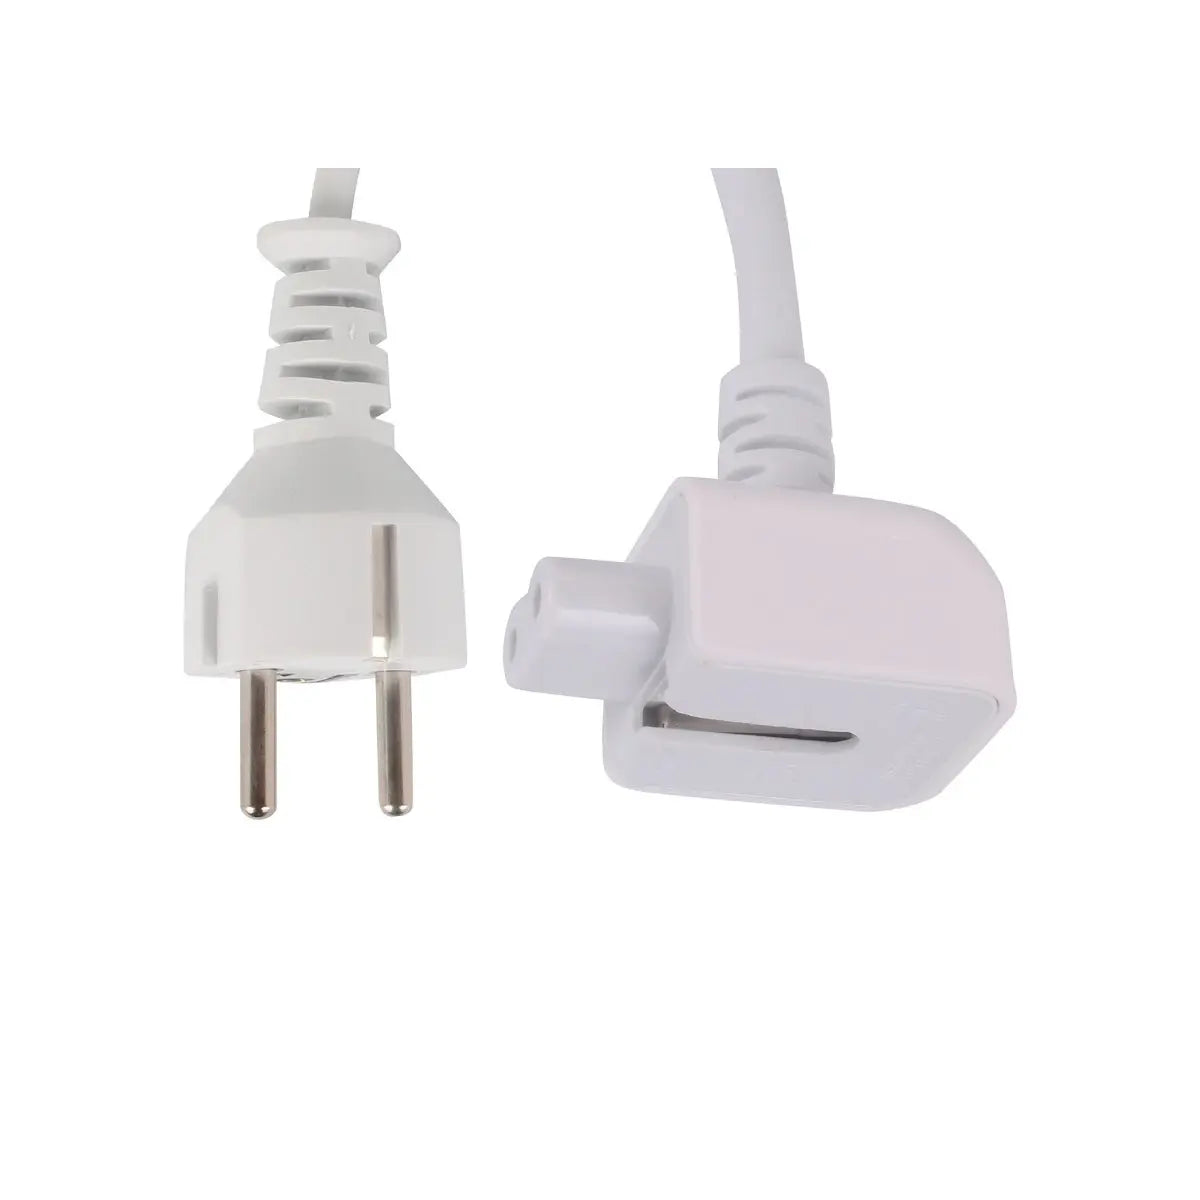 Iphone charger Câble d'alimentation pour APPLE MAC Apple Computer, Inc